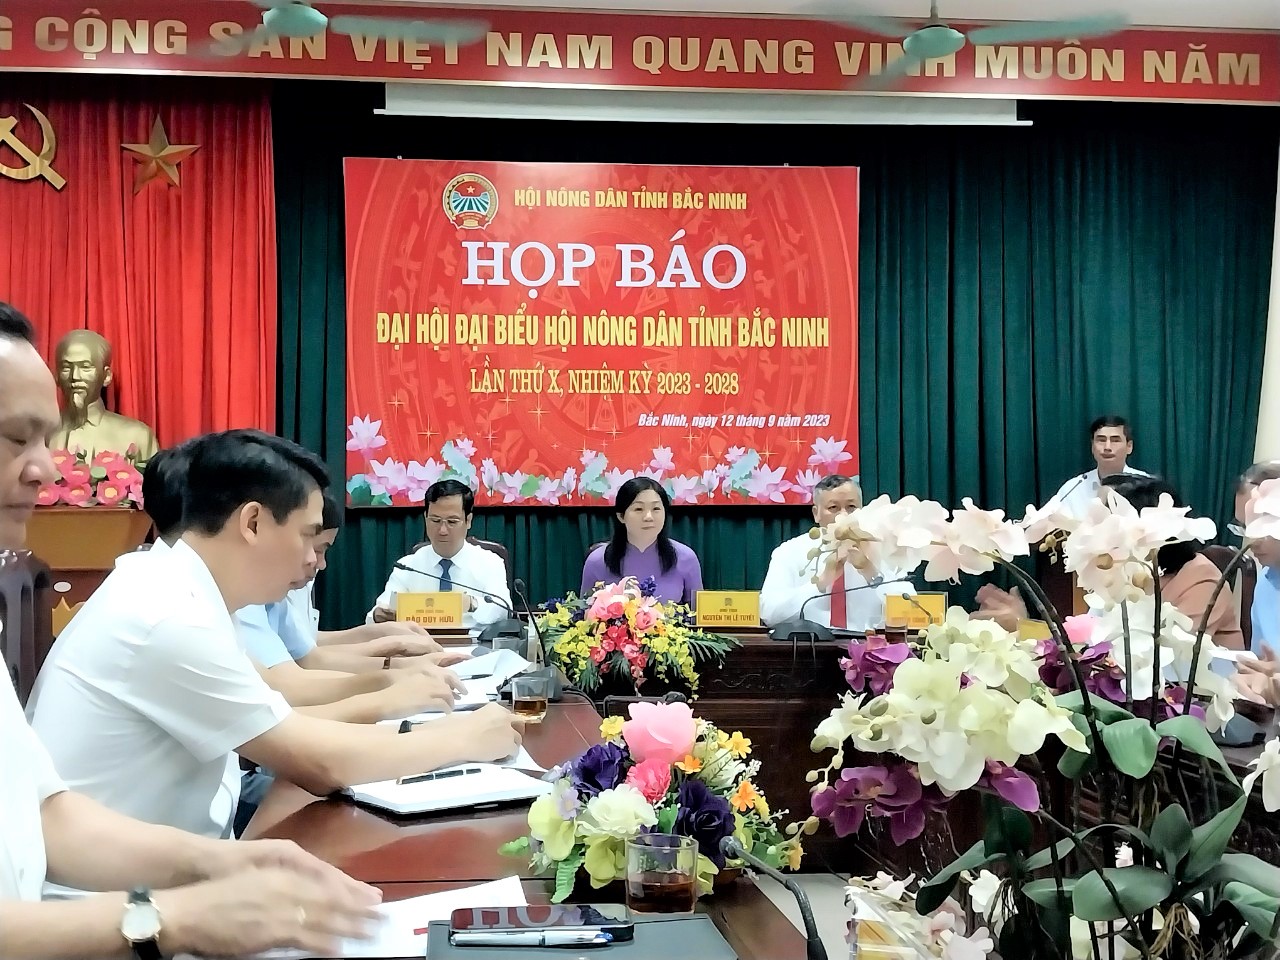 Toàn cảnh buổi Họp báo thông tin về Đại hội đại biểu Hội Nông dân tỉnh Bắc Ninh lần thứ X